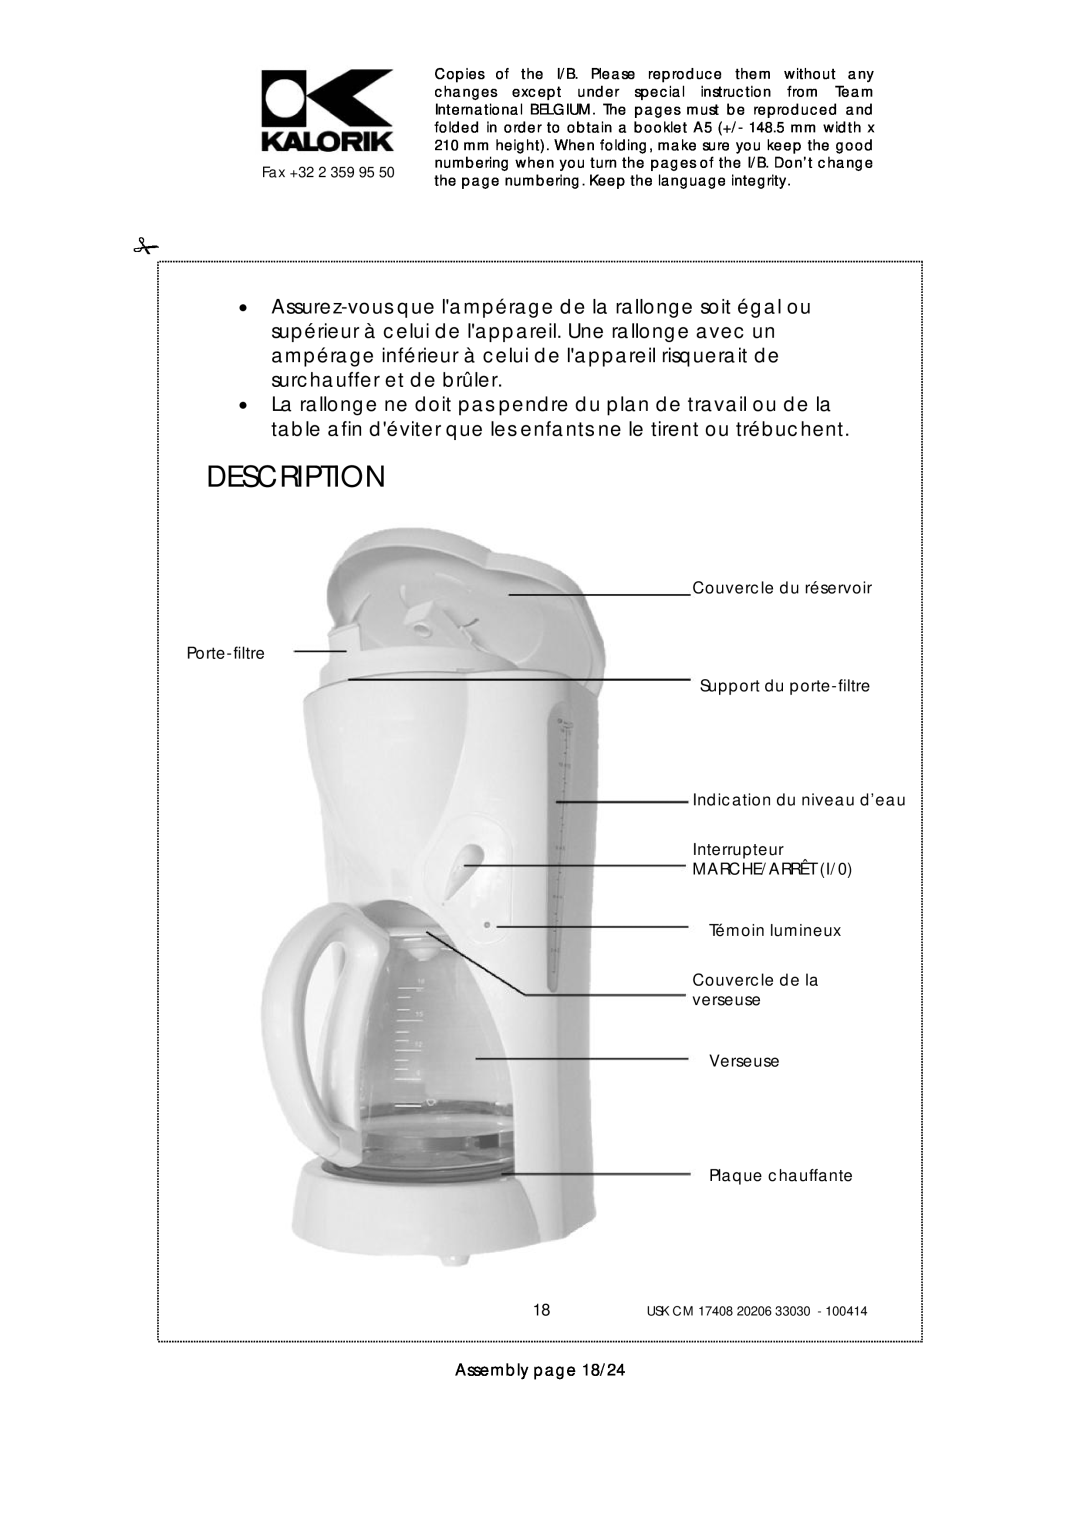 Kalorik USK CM 33030 Description, Couvercle du réservoir Porte-filtre, Support du porte-filtre, Plaque chauffante, Fax +32 